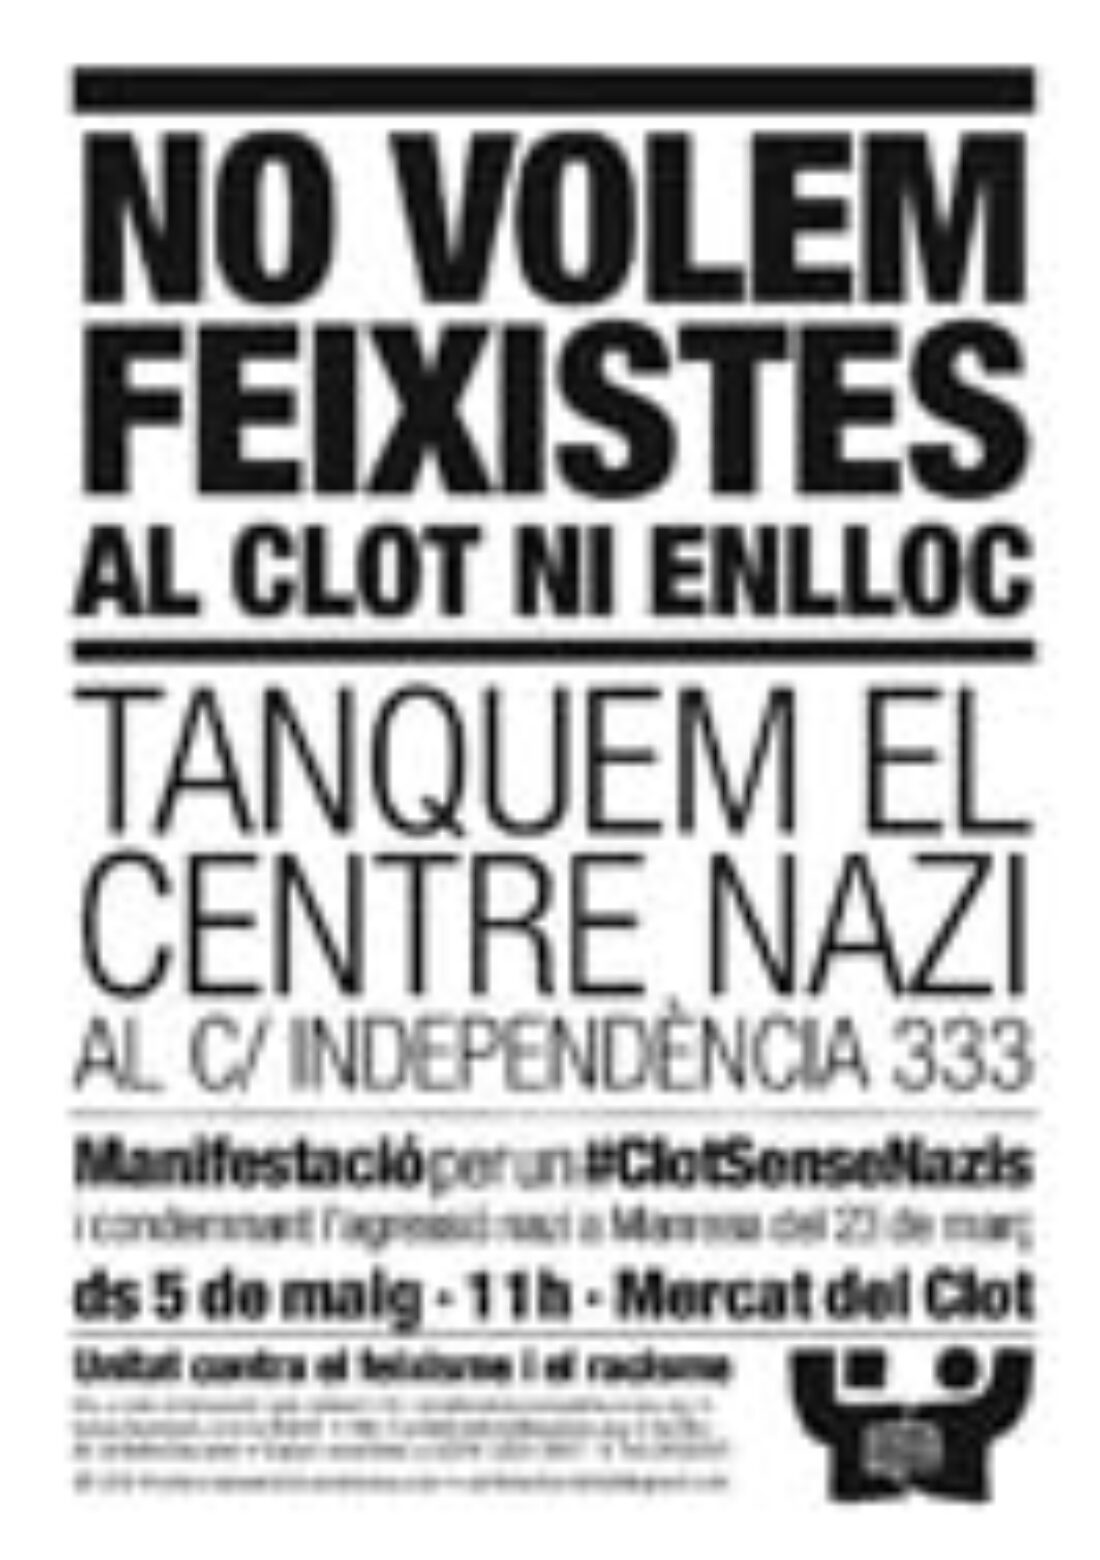 Barcelona: ¡No queremos fascistas en el Clot, ni en ninguna parte! Cerremos el centro nazi